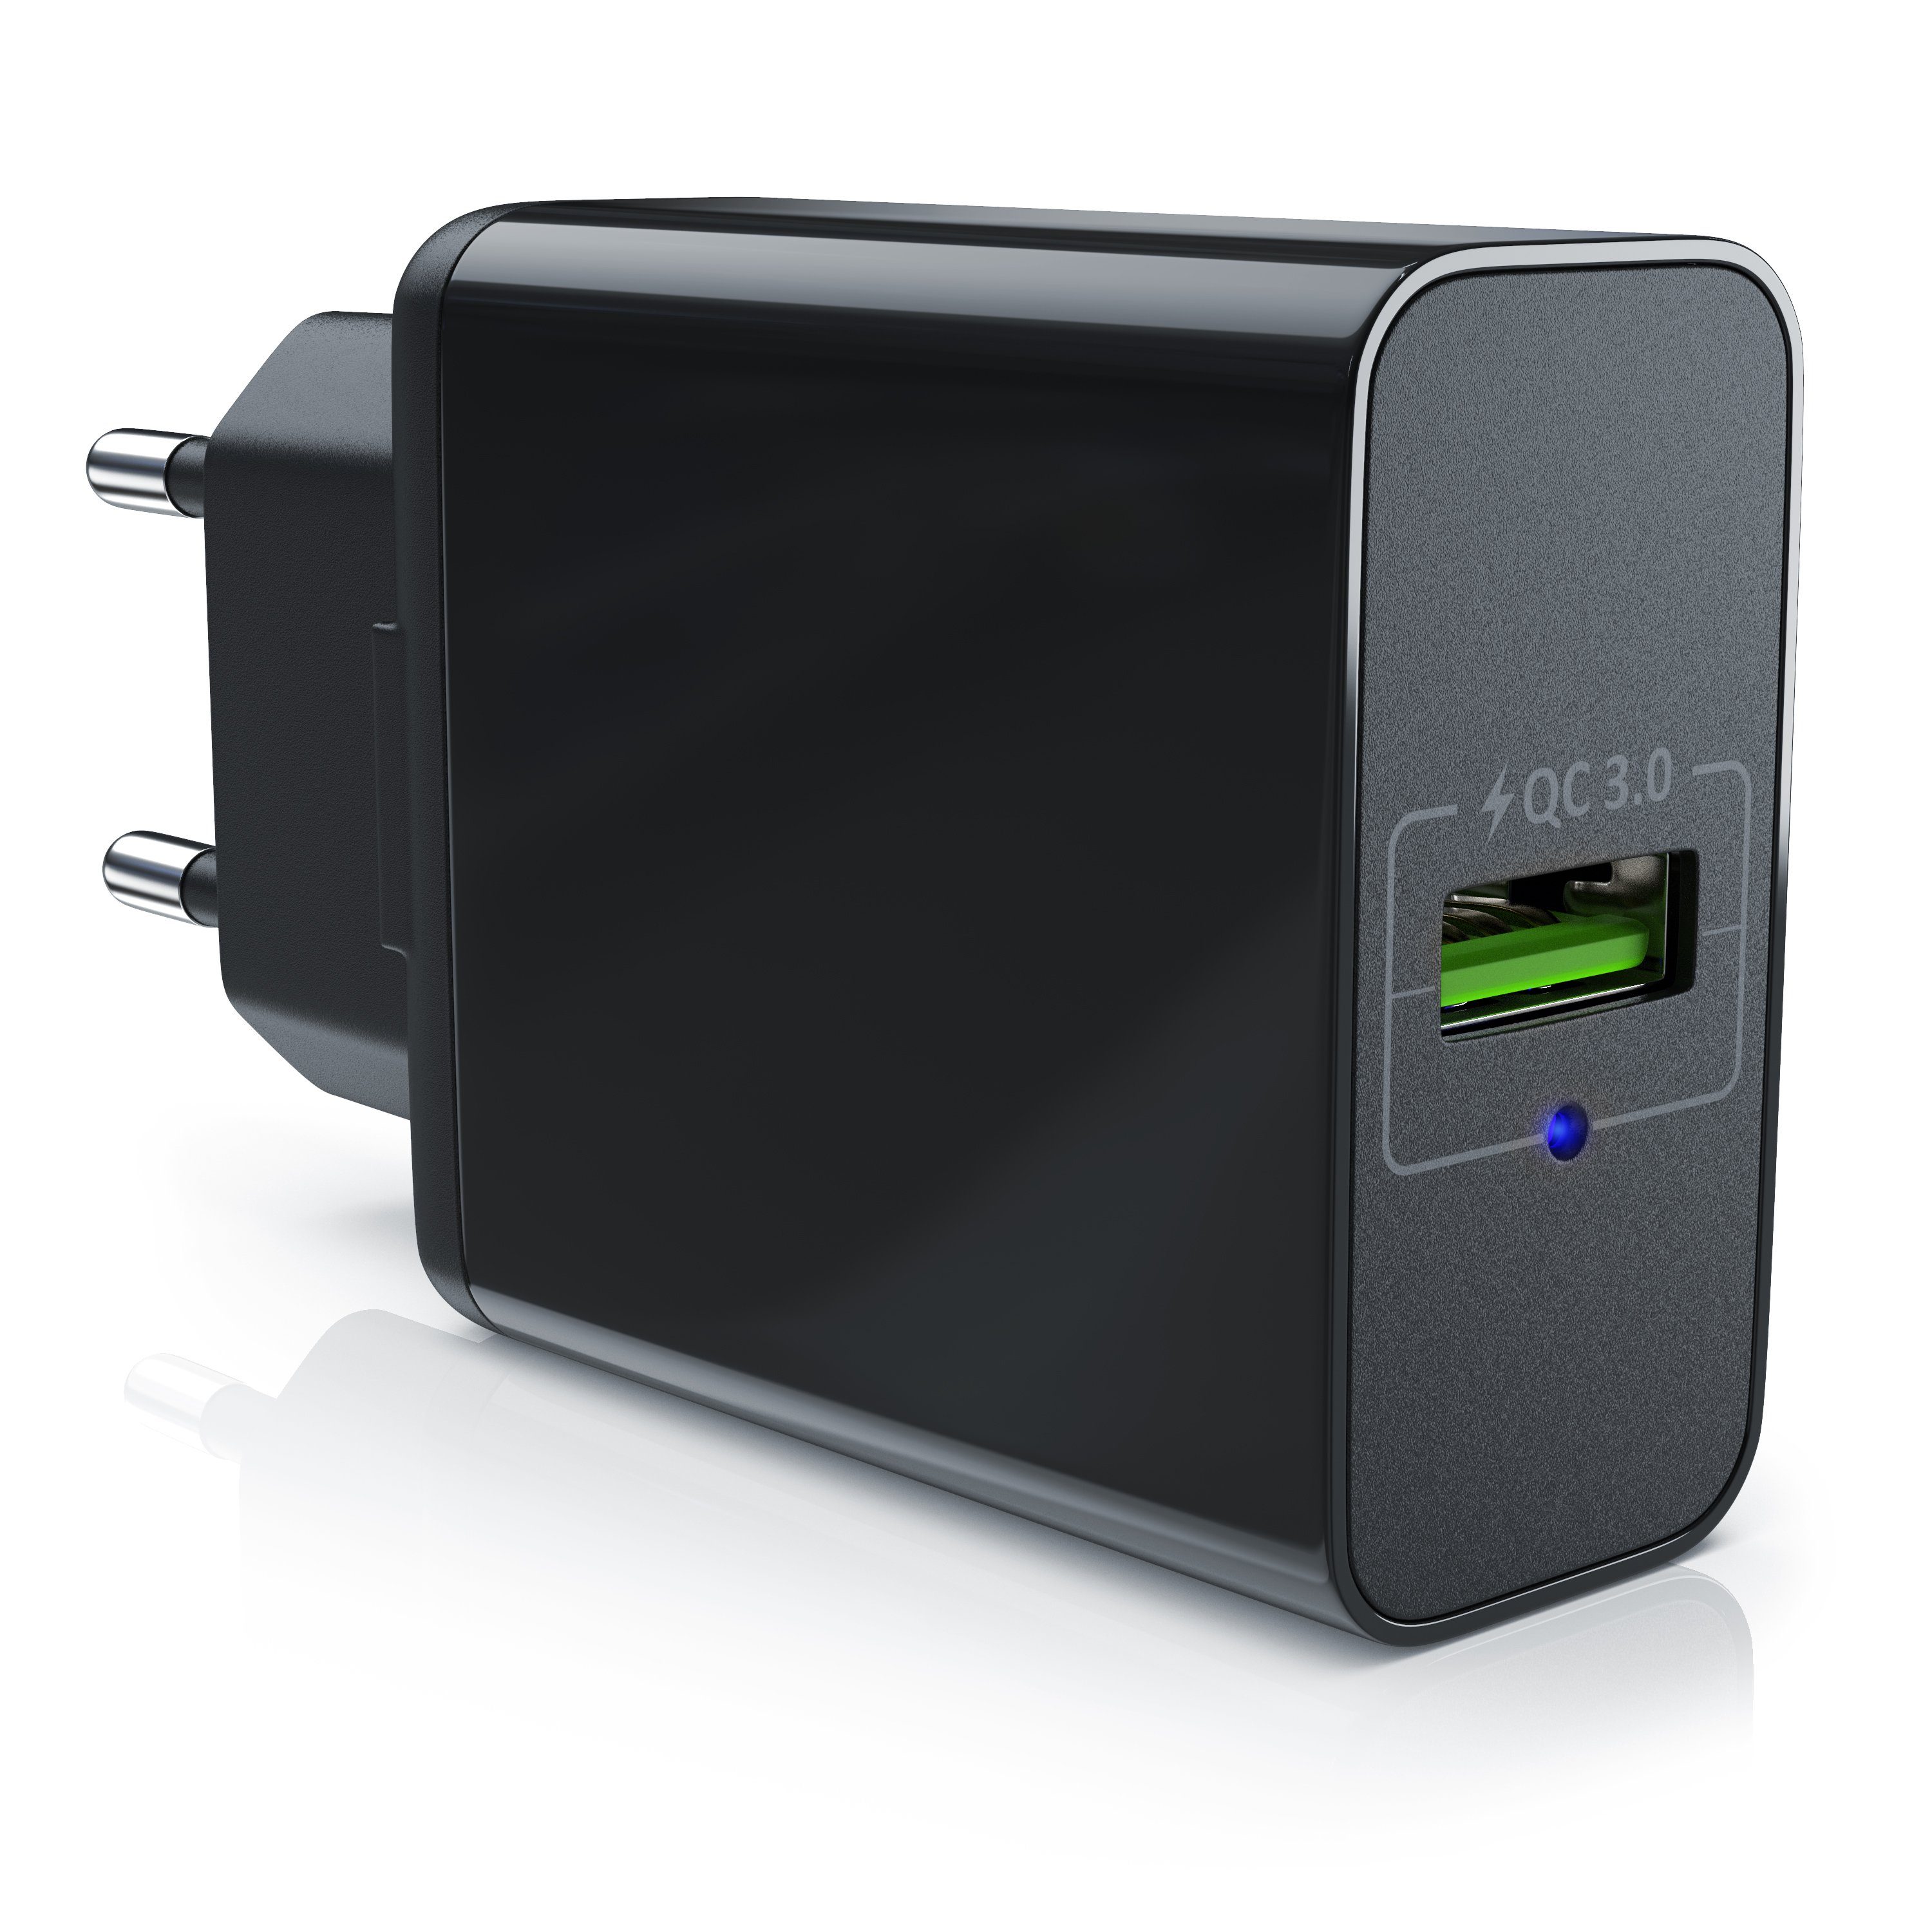 Aplic USB-Ladegerät (3000 mA, USB Ladegerät mit Schnellladefunktion -  Netzteil mit Quick Charge 3.0 - Smart Charge Solid Charge intelligentes  Laden - geeignet für Handys, Smartphones, Navis, Tablets UVM)